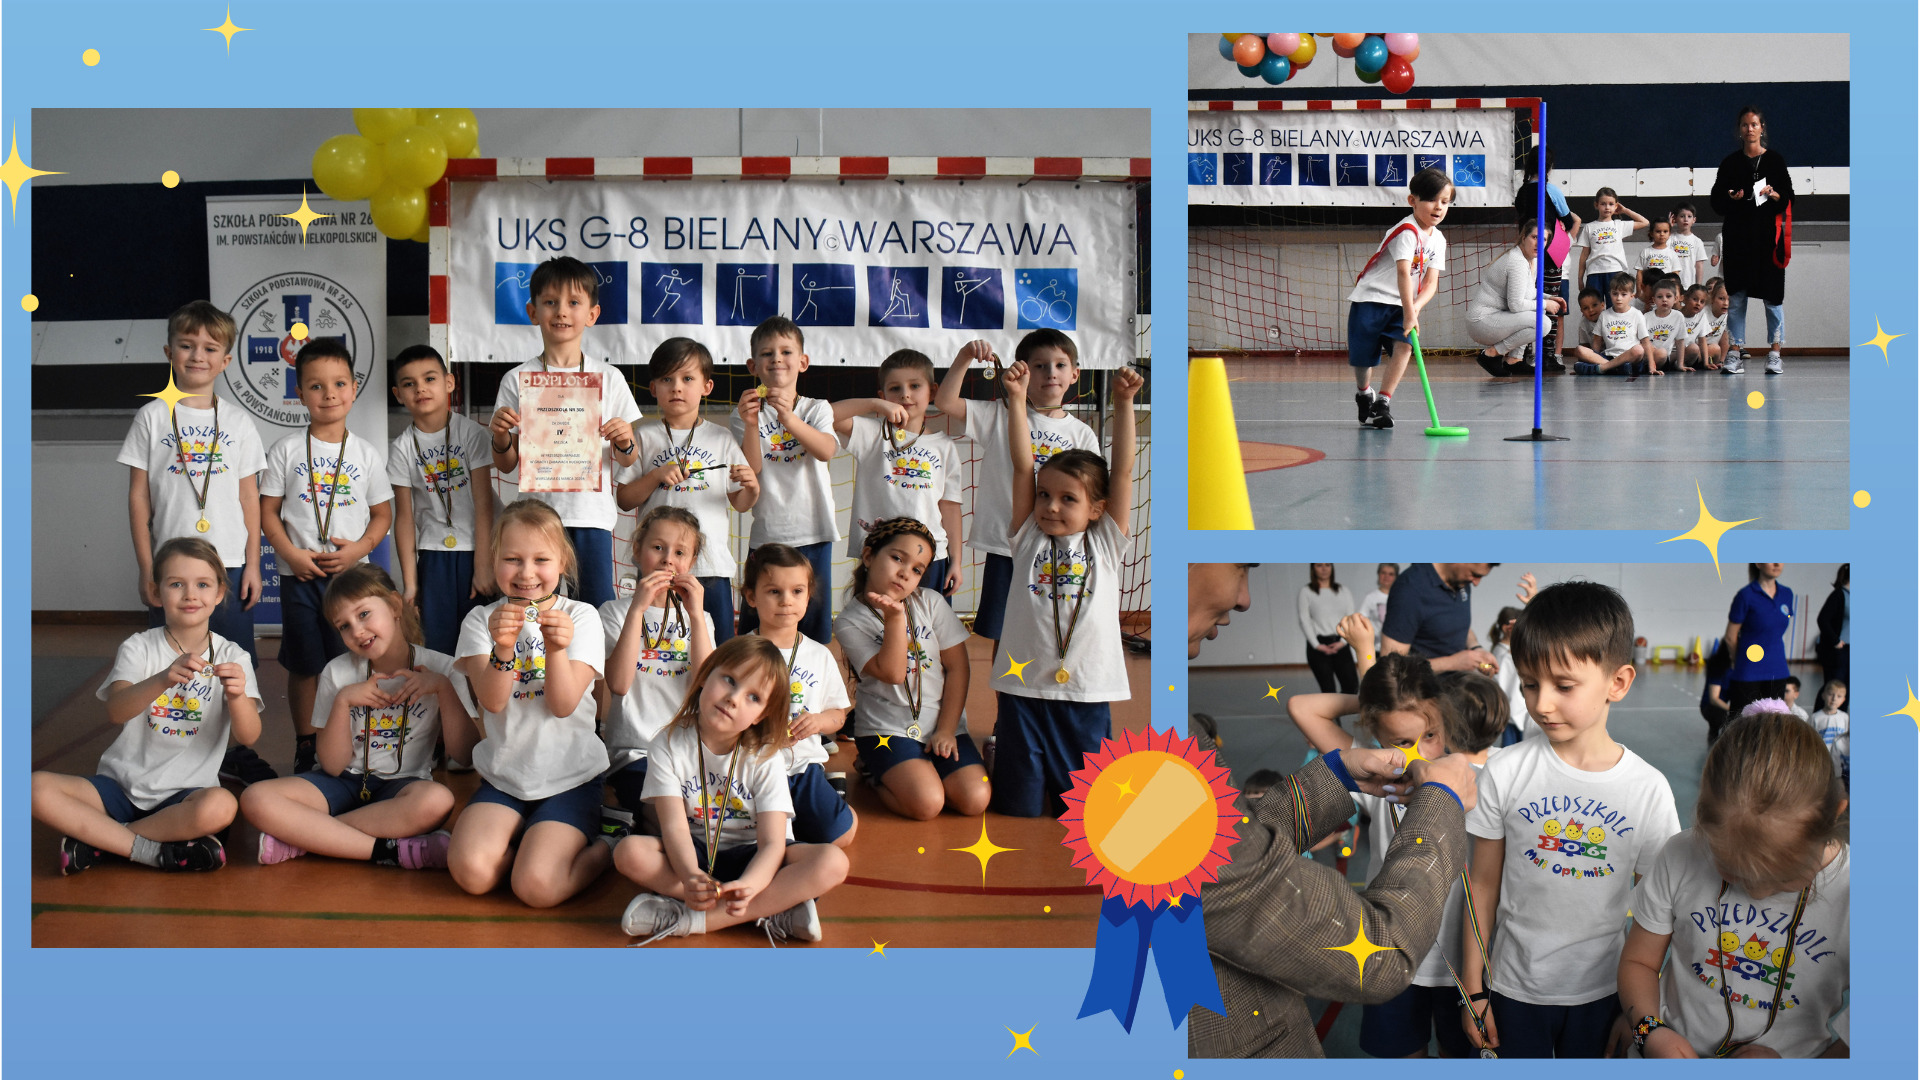 Plakat grupy dzieci biorących udział w zawodach sportowych. Zdjęcie grupowe uczestników, zdjęcie wręczania medali i zdjęcie z konkurencji sportowej.